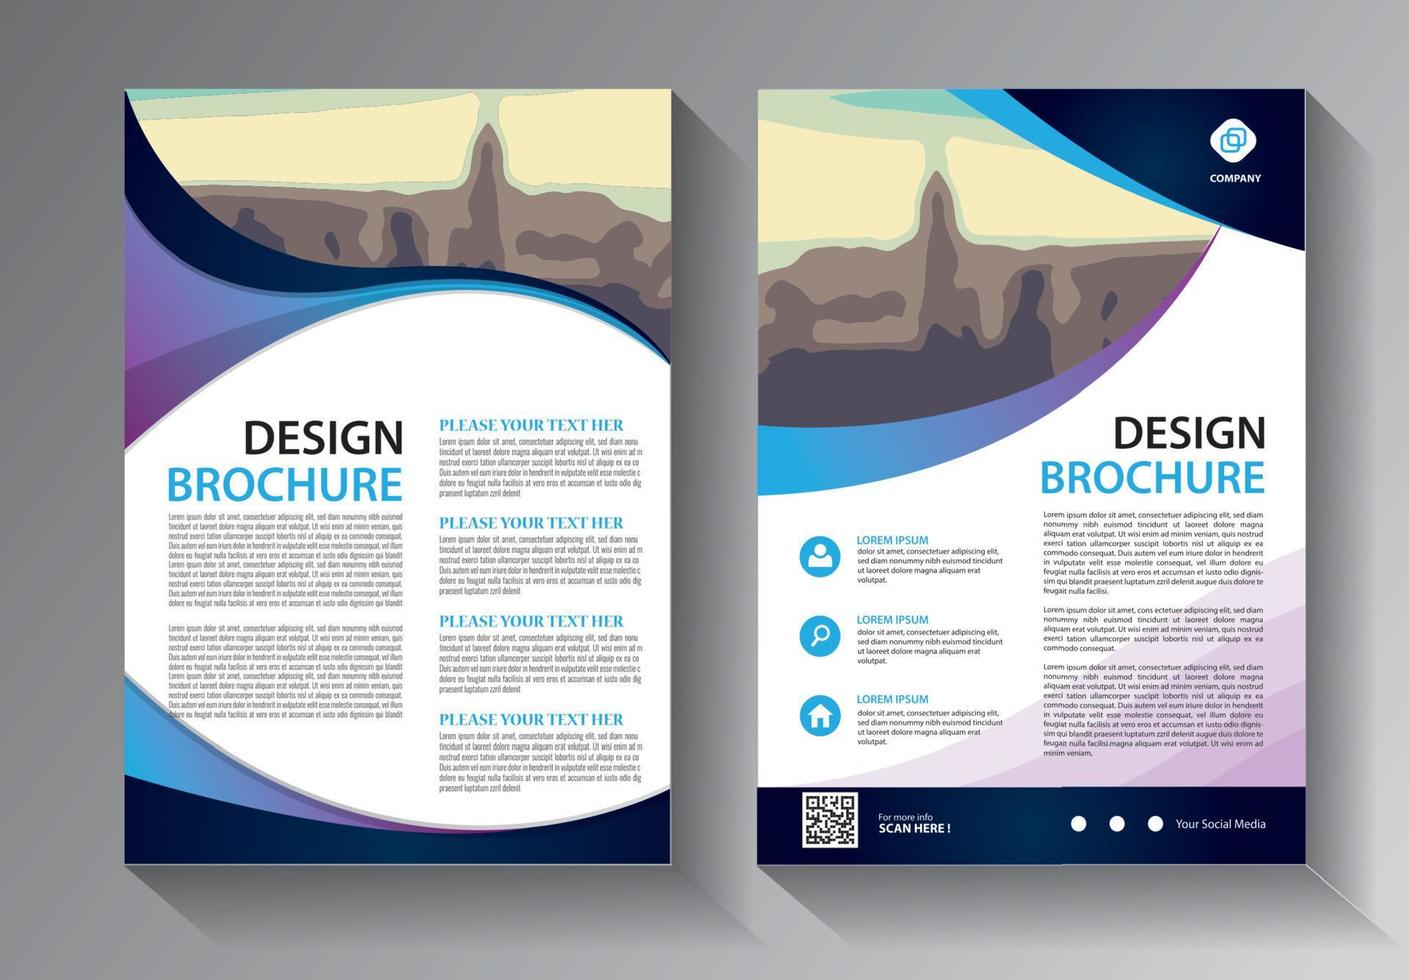 Flyer-Business-Vorlage für Broschüren-Jahresbericht mit moderner Idee vektor